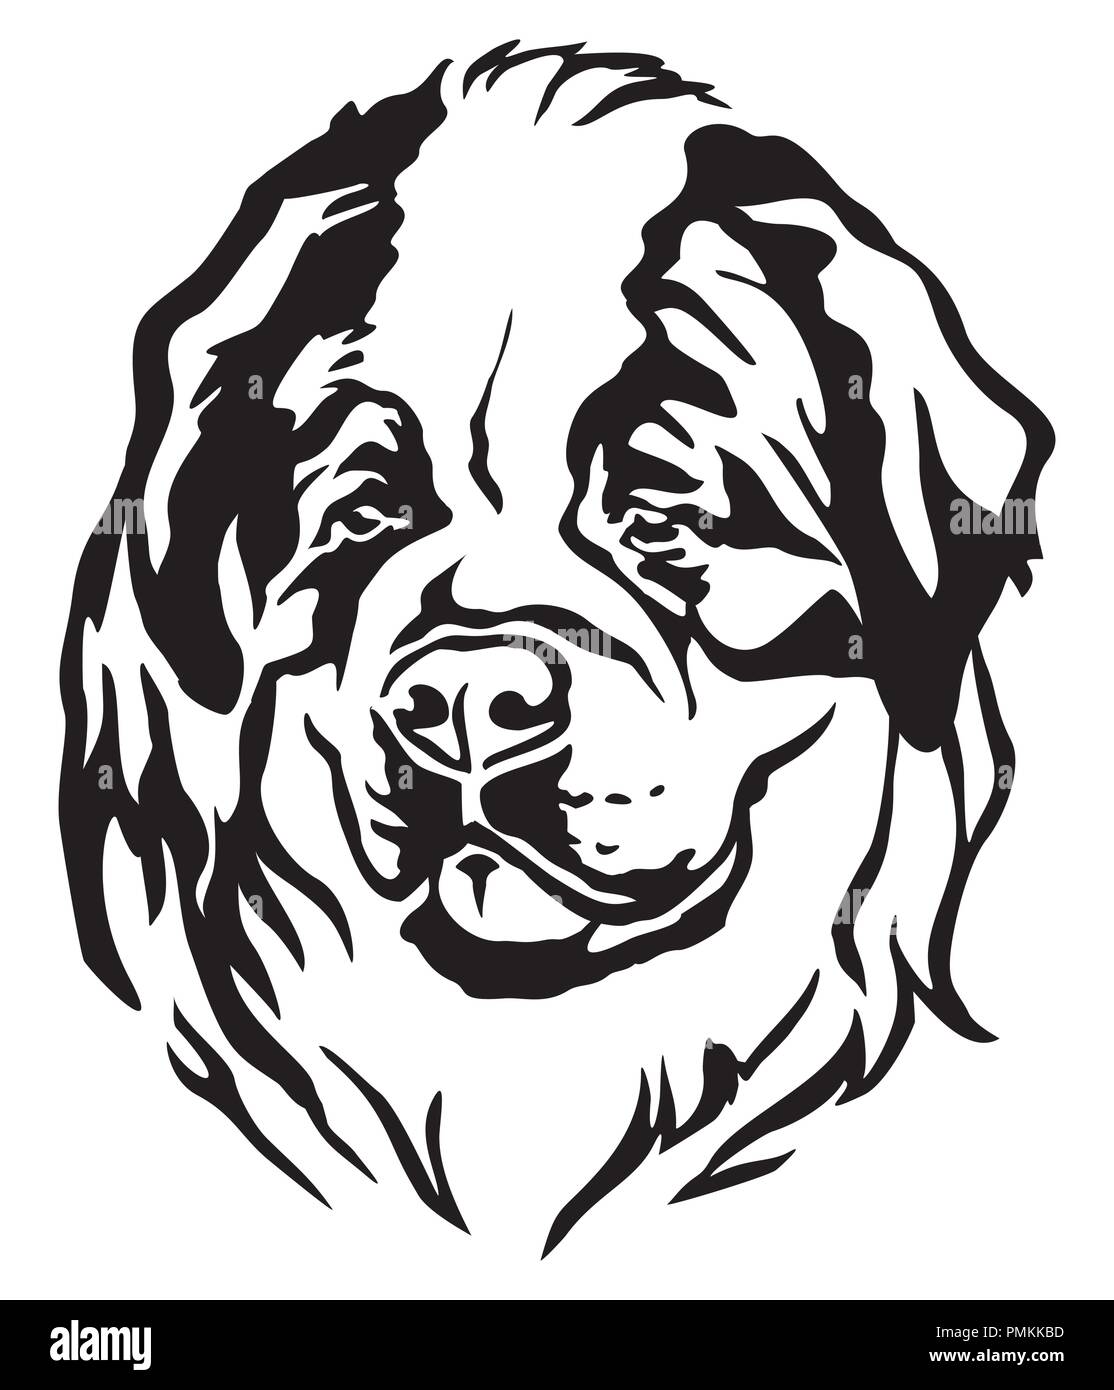 Dog Silhouette : images, photos et images vectorielles de stock |  Shutterstock | Silhouette de chien, Image vectorielle, Silhouette